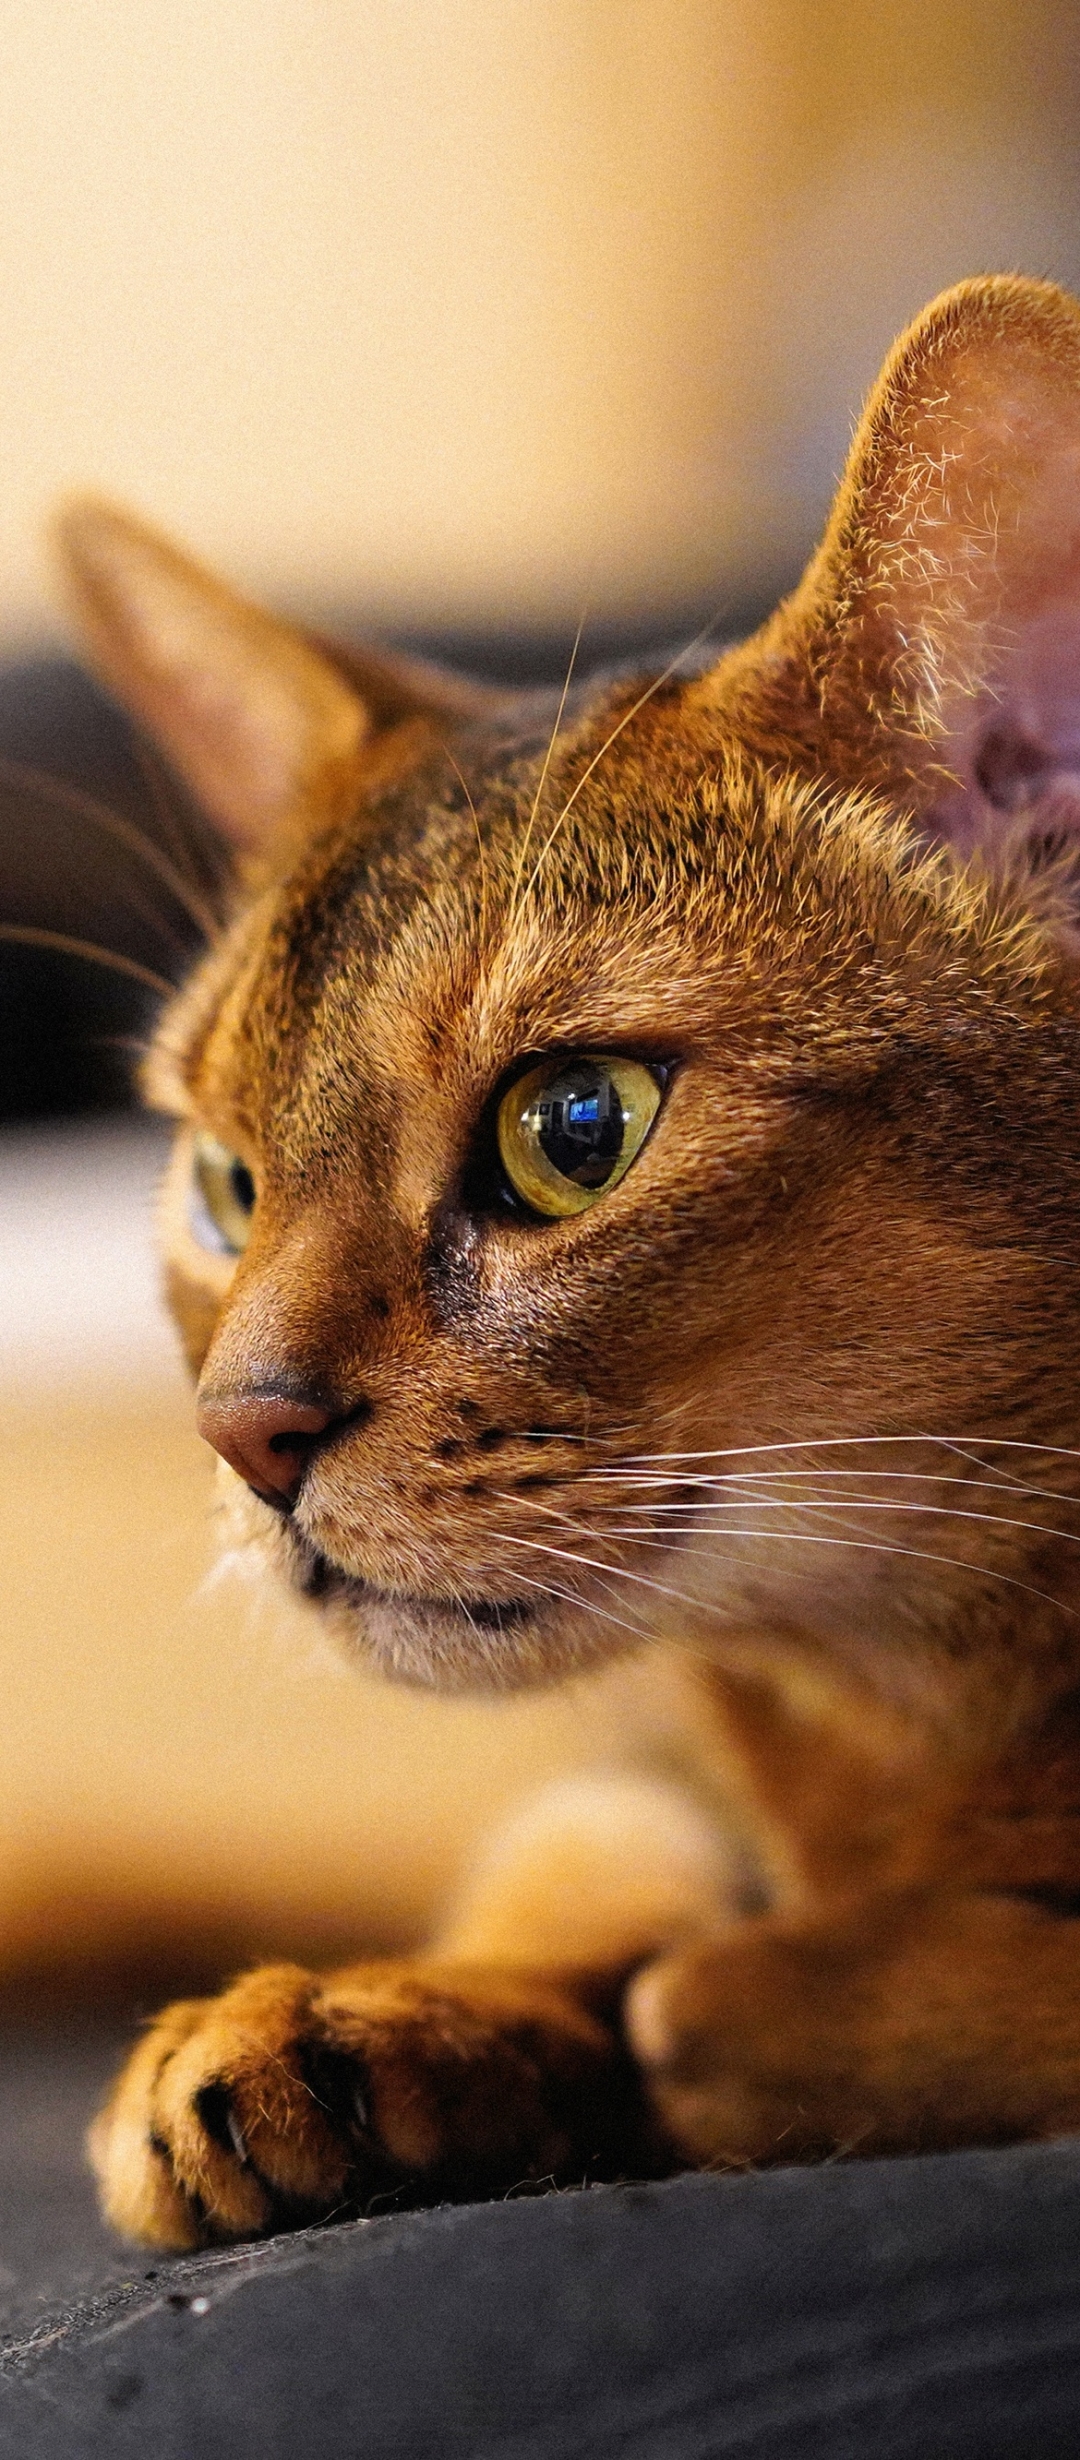 Descarga gratuita de fondo de pantalla para móvil de Animales, Gatos, Gato, Bozal, Gato Abisinio.